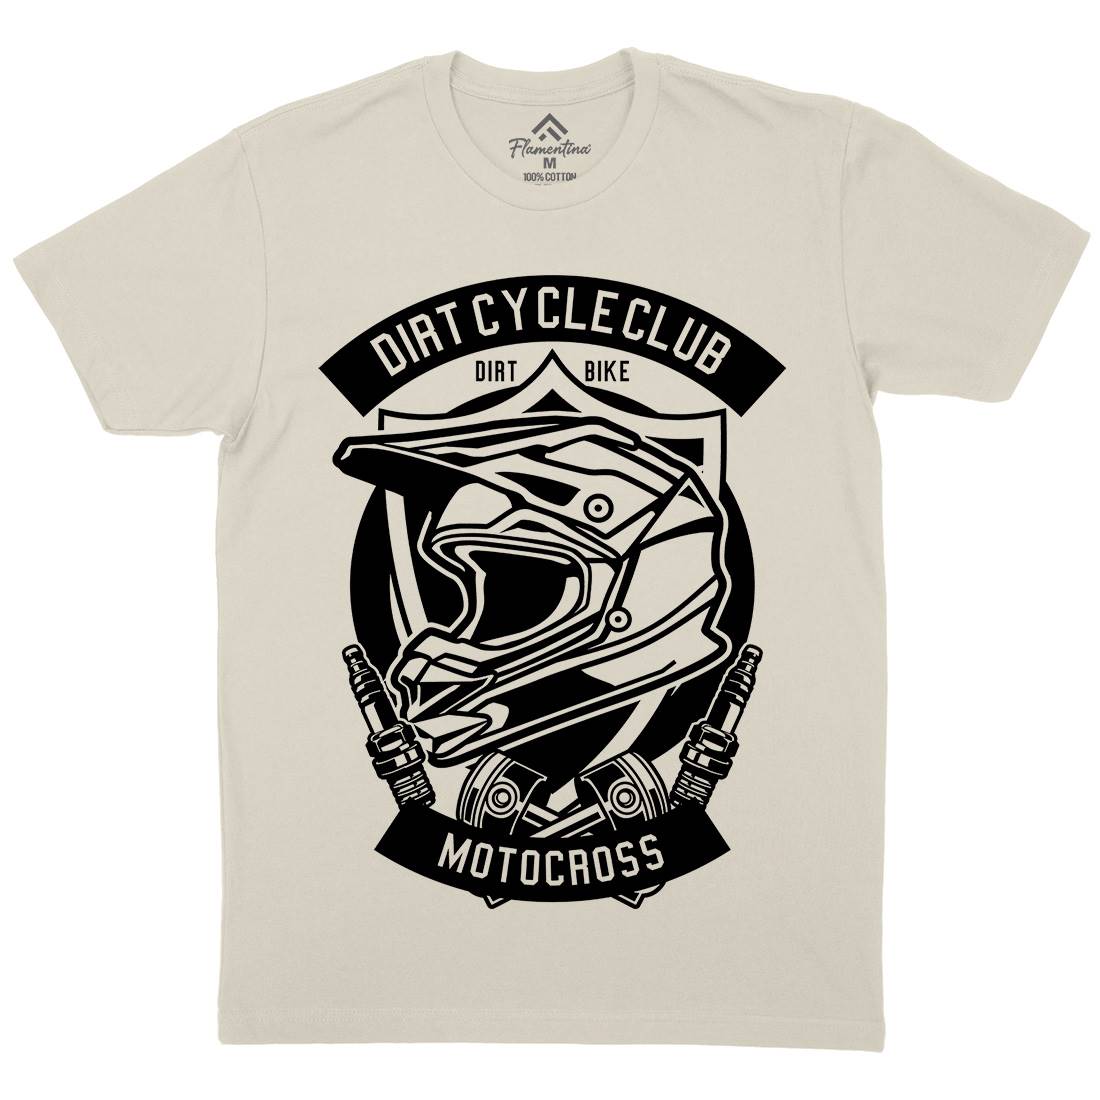 Dirty Cycle Club Mens Organic Crew Neck T-Shirt Motorcycles B532